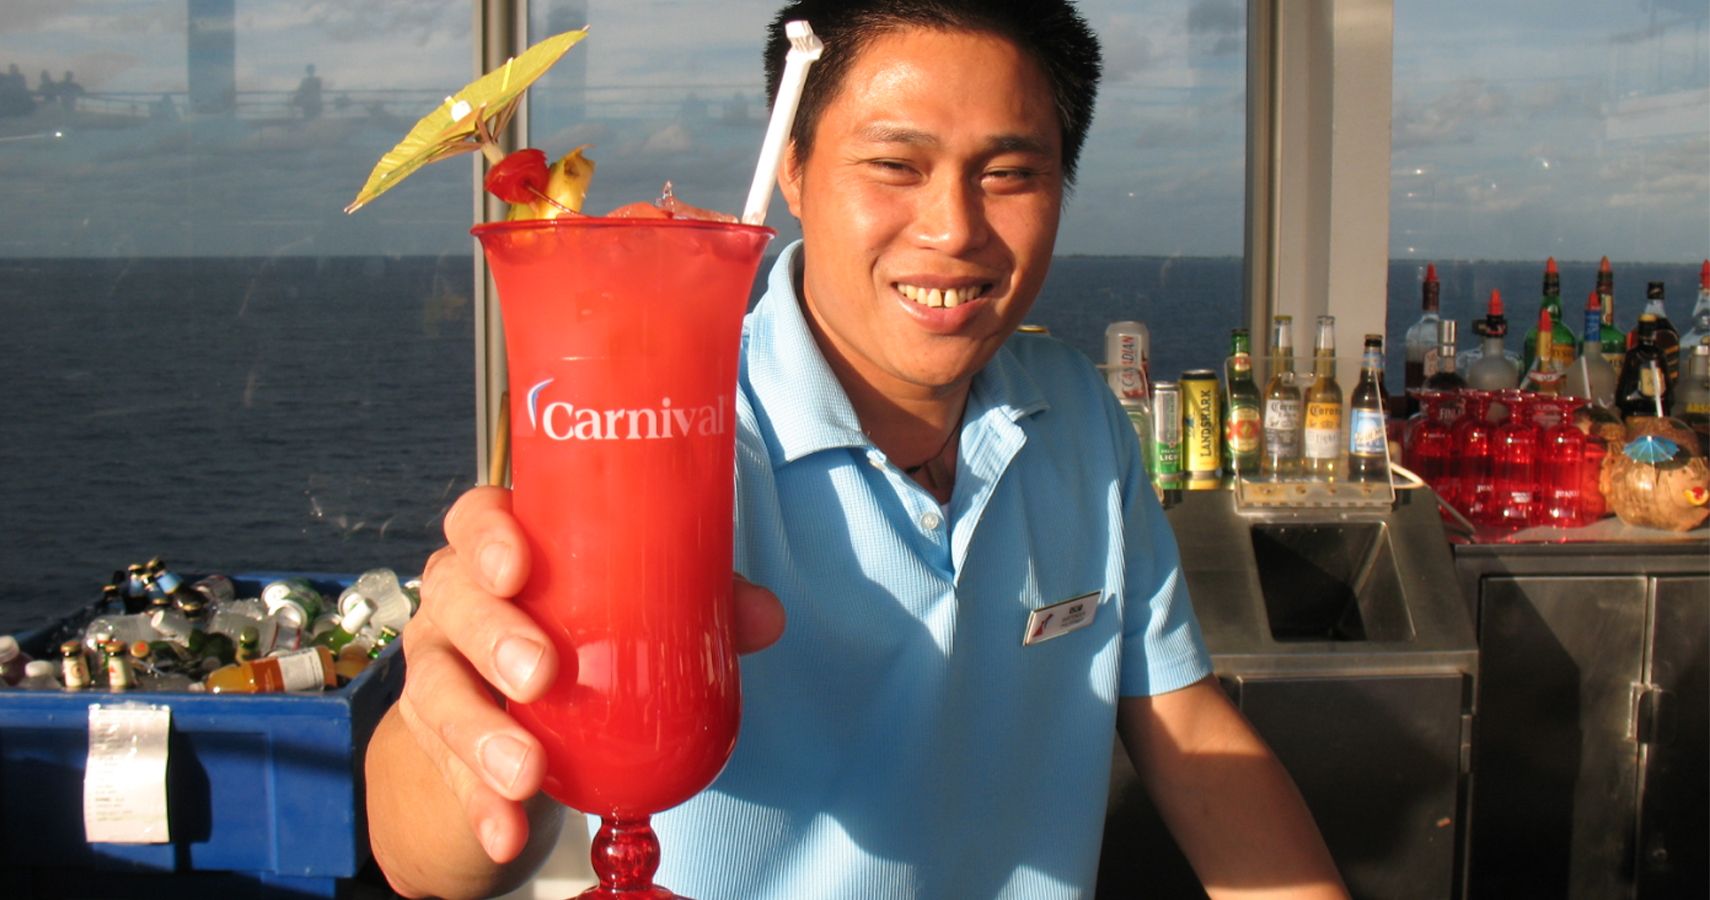 Carnival cruise bartender serving drink